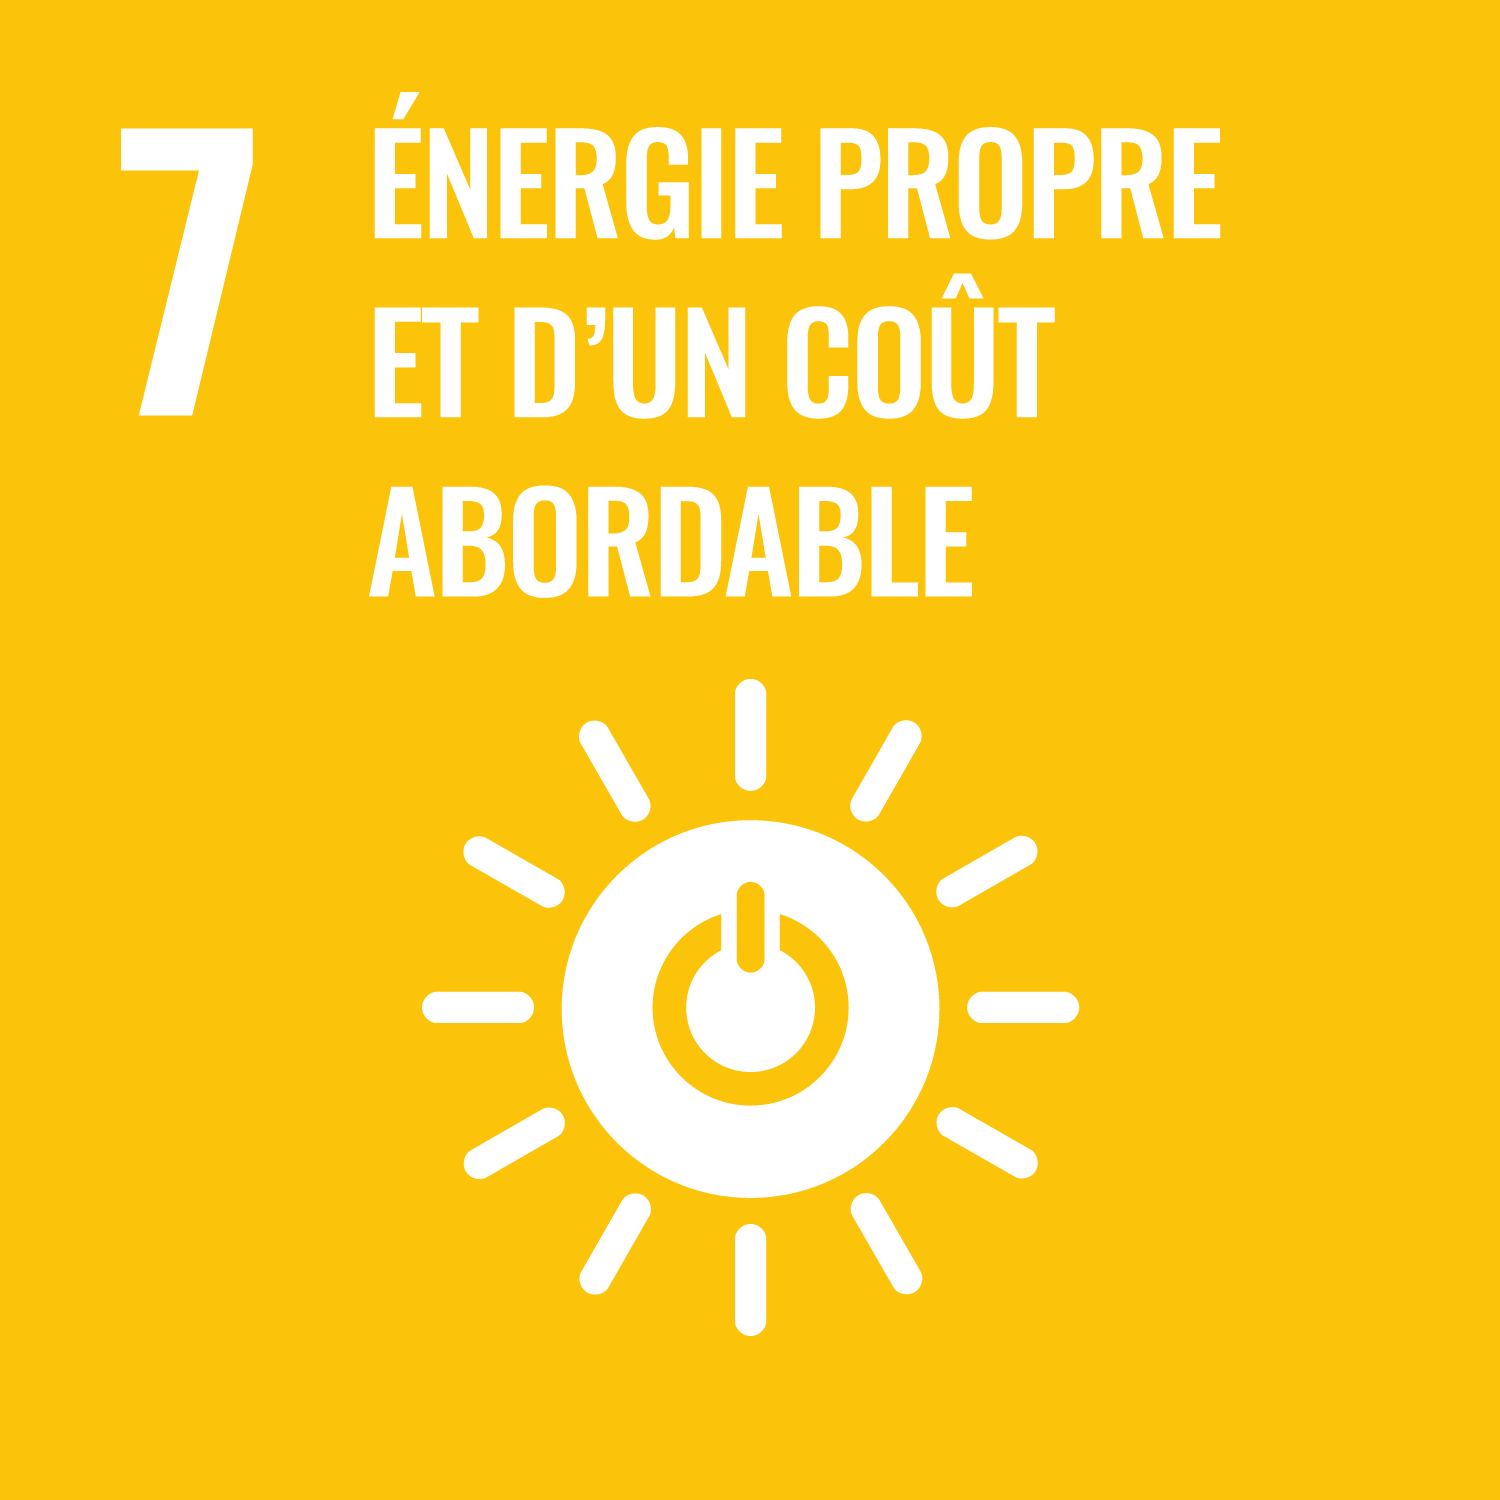 Objectif 7 - Garantir l’accès de tous à des services énergétiques fiables, durables et modernes, à un coût abordable